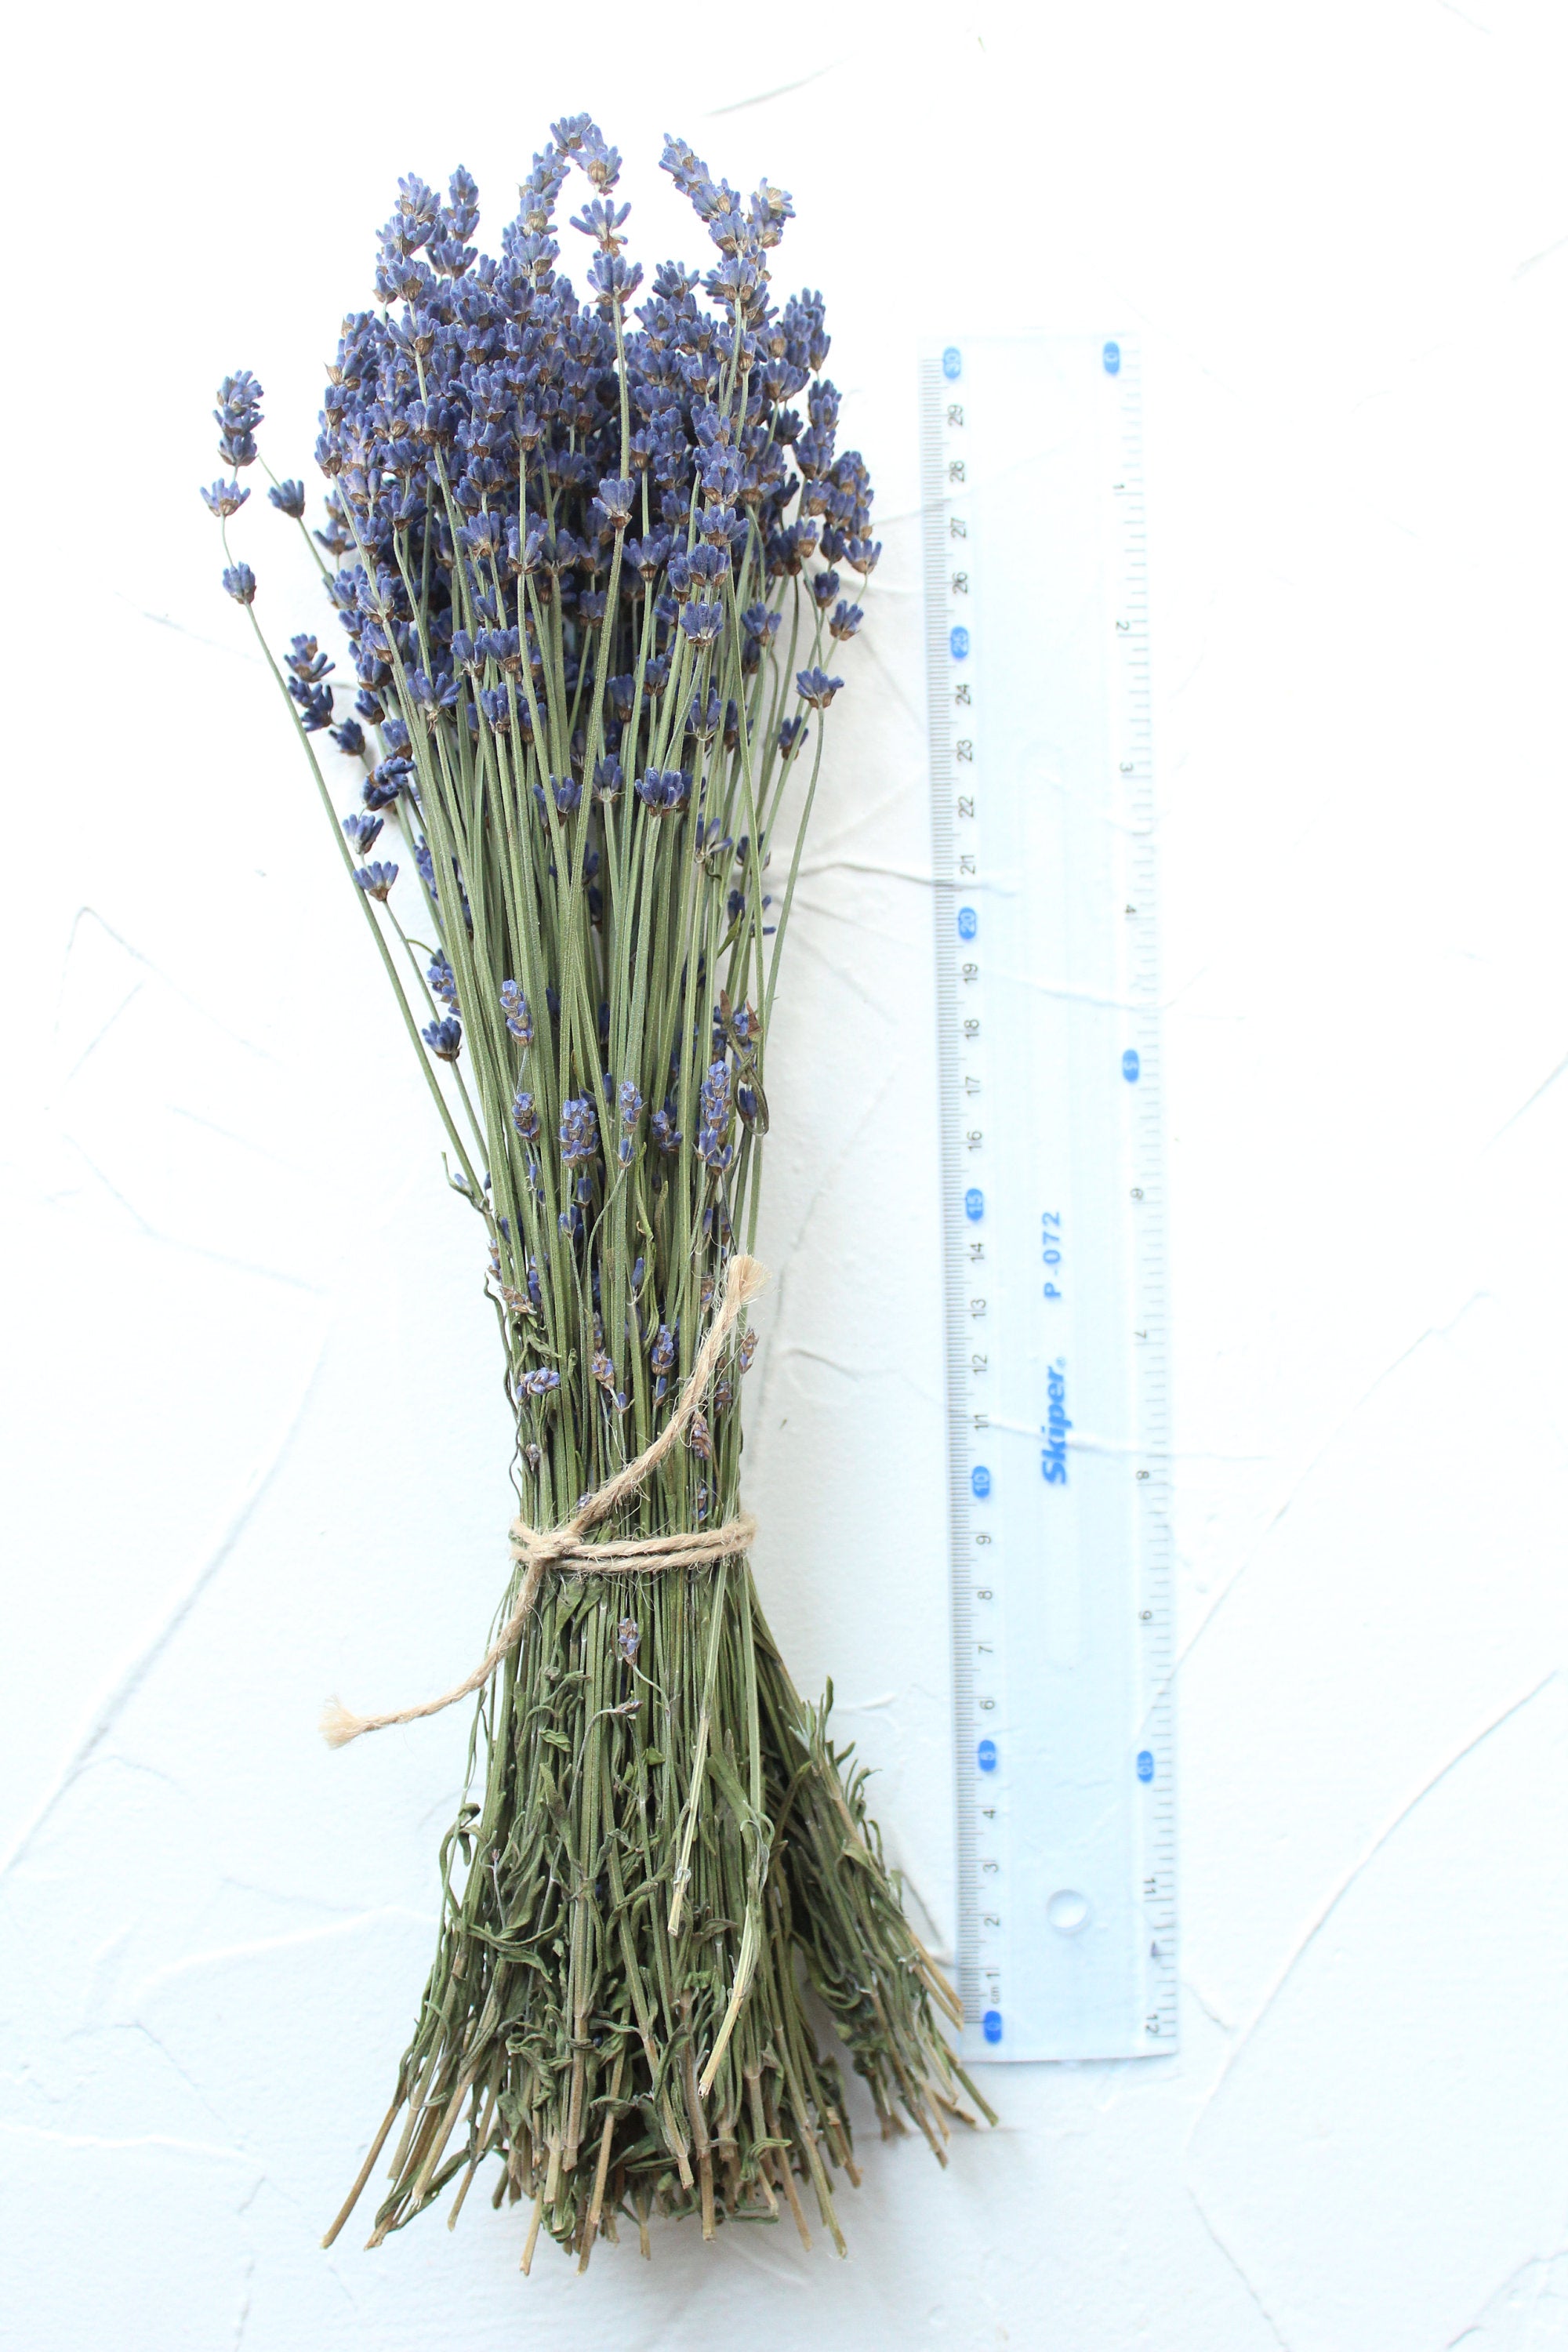 Lavender Bundle, Dried Lavender Bouquet, 100-120 Stem Per Bouquet